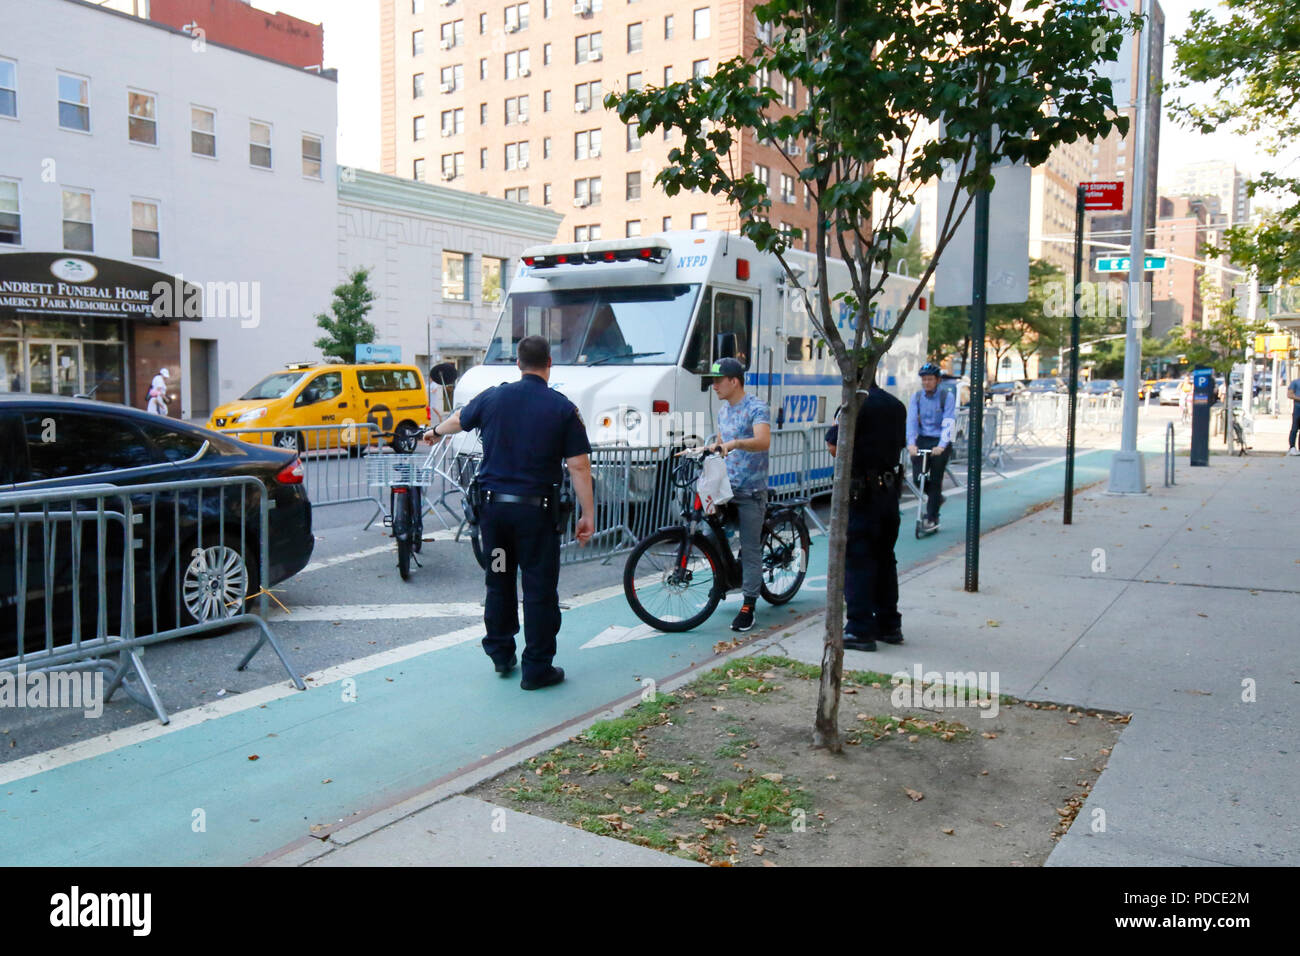 Nueva York, NY, EE.UU. 8 de agosto de 2018. La policía dirige a un ciclista con una bicicleta eléctrica de clase 2 -- asistencia de acelerador -- a una jaula de retención junto al carril bici de la Segunda Avenida en Manhattan. Las bicicletas eléctricas son ilegales en el estado de Nueva York. El alcalde de Blasio de Nueva York ha ordenado al Departamento de Transporte que comience a permitir bicicletas eléctricas asistidas por pedales de clase 1, mientras continúa la ofensiva en todas las bicicletas electrónicas. La mayoría de los usuarios de bicicletas eléctricas son personal de entrega de alimentos. Foto de stock